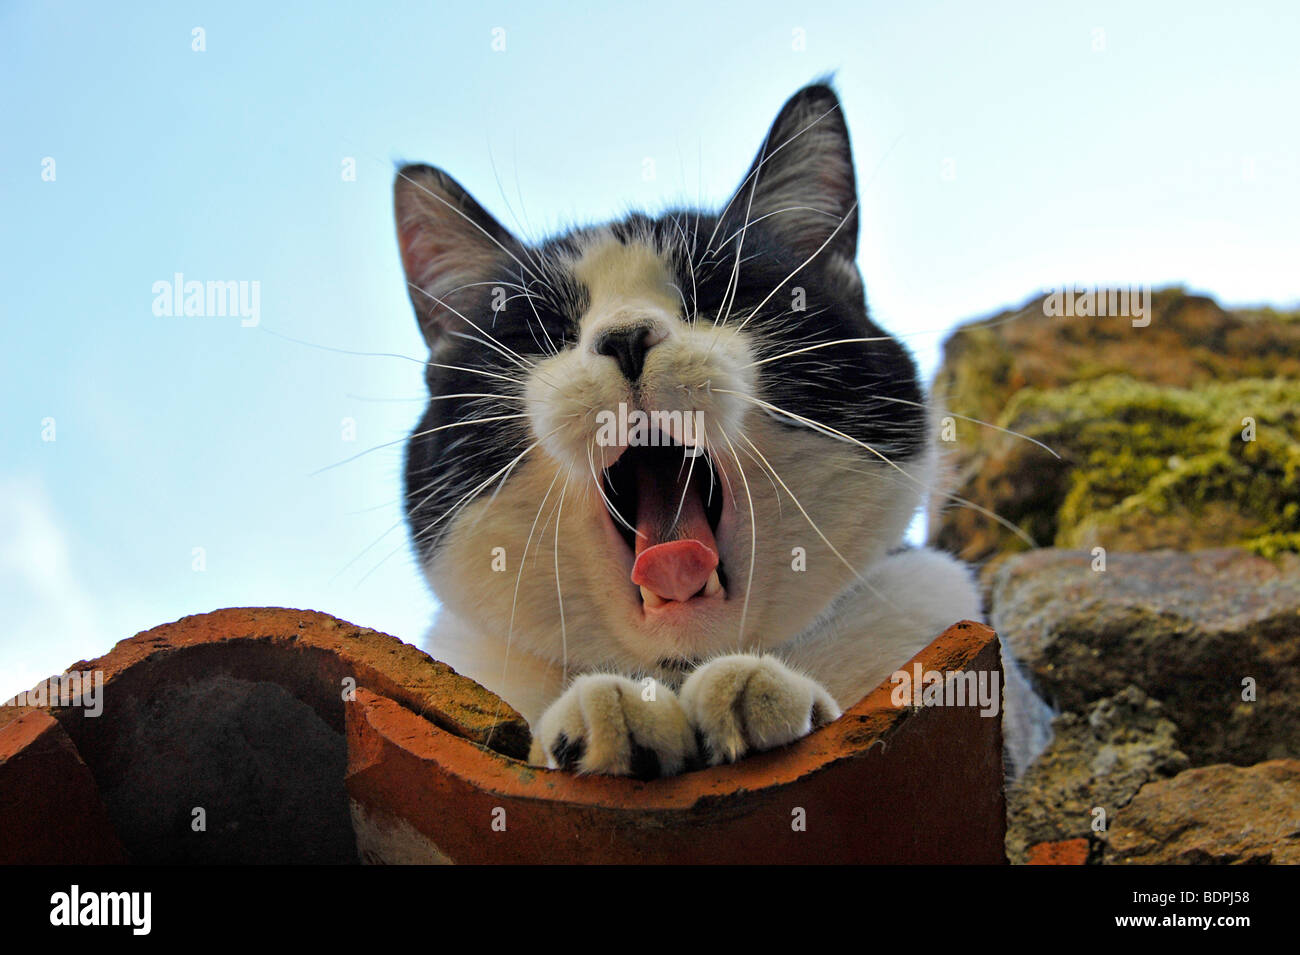 Funny animals Felix the black and white cat yawning Stock Photo